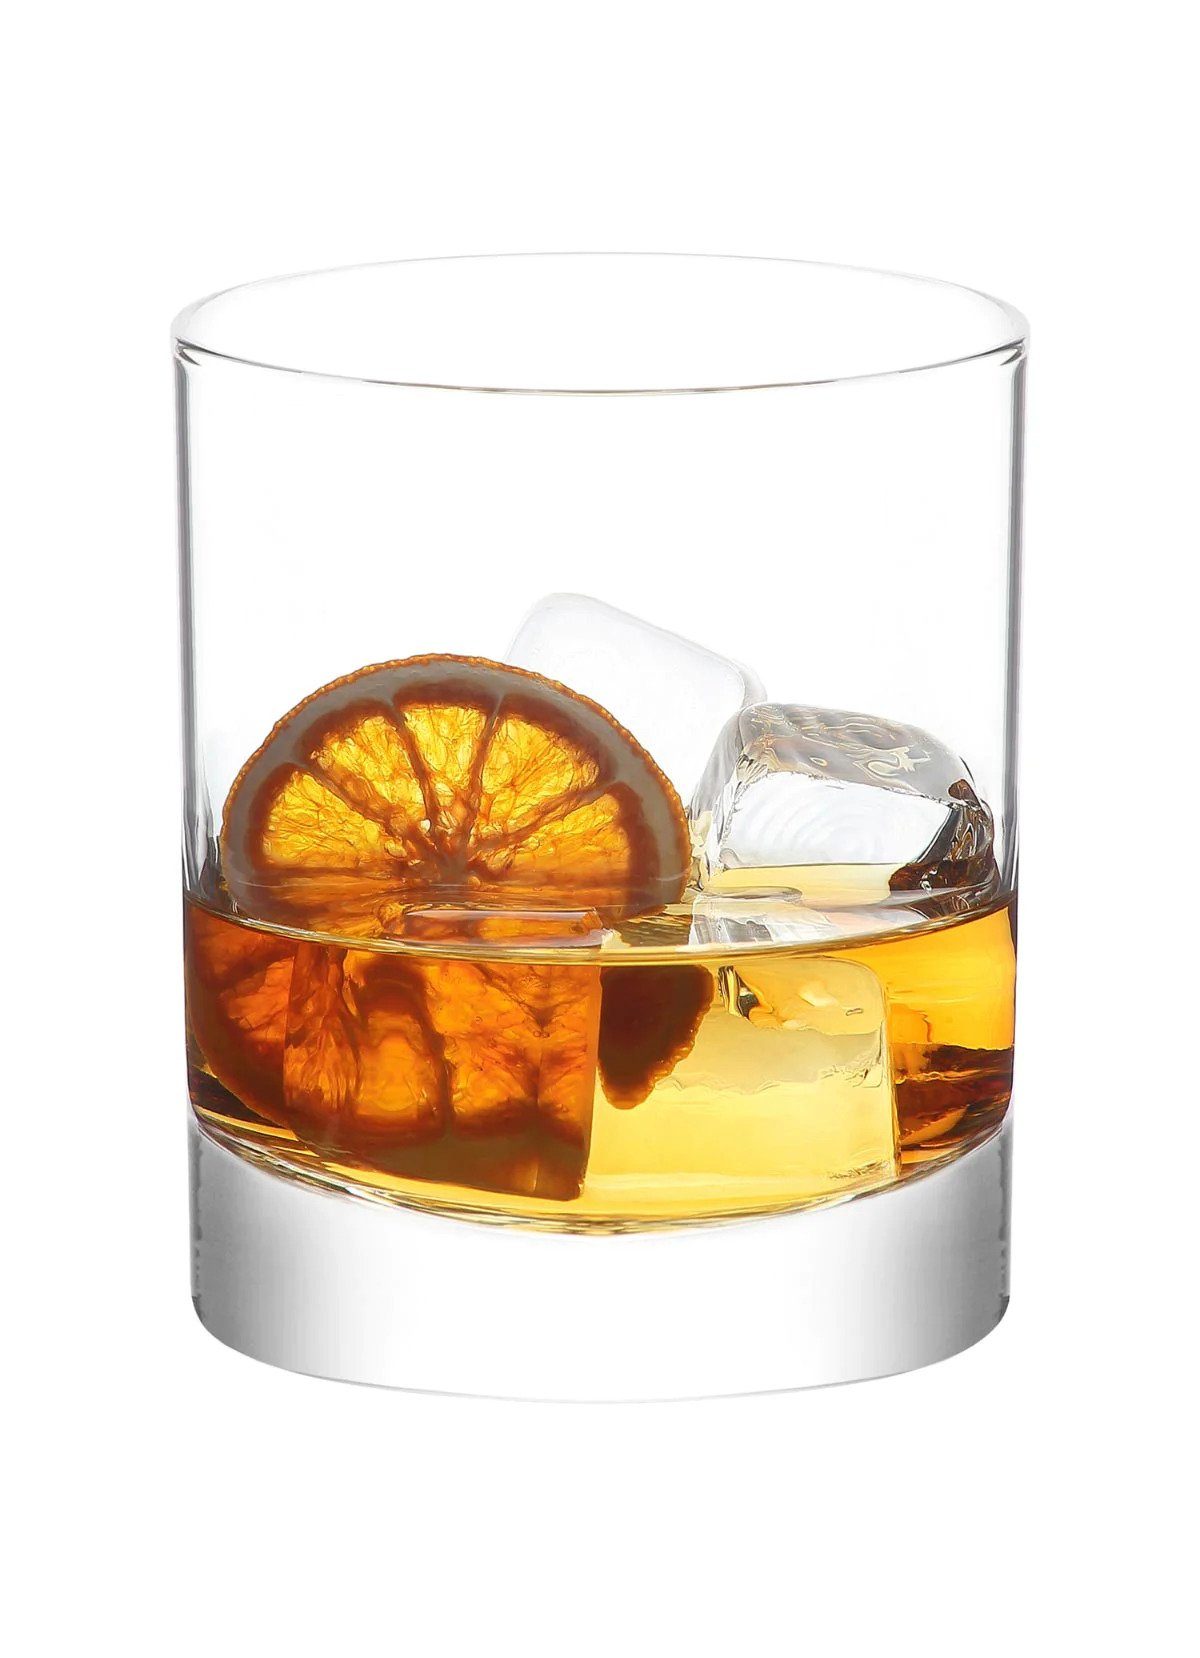 ml ADA382, Trinkglas Whisky-Glas Glas 6tlg 305 Wassergläser Glas LAV